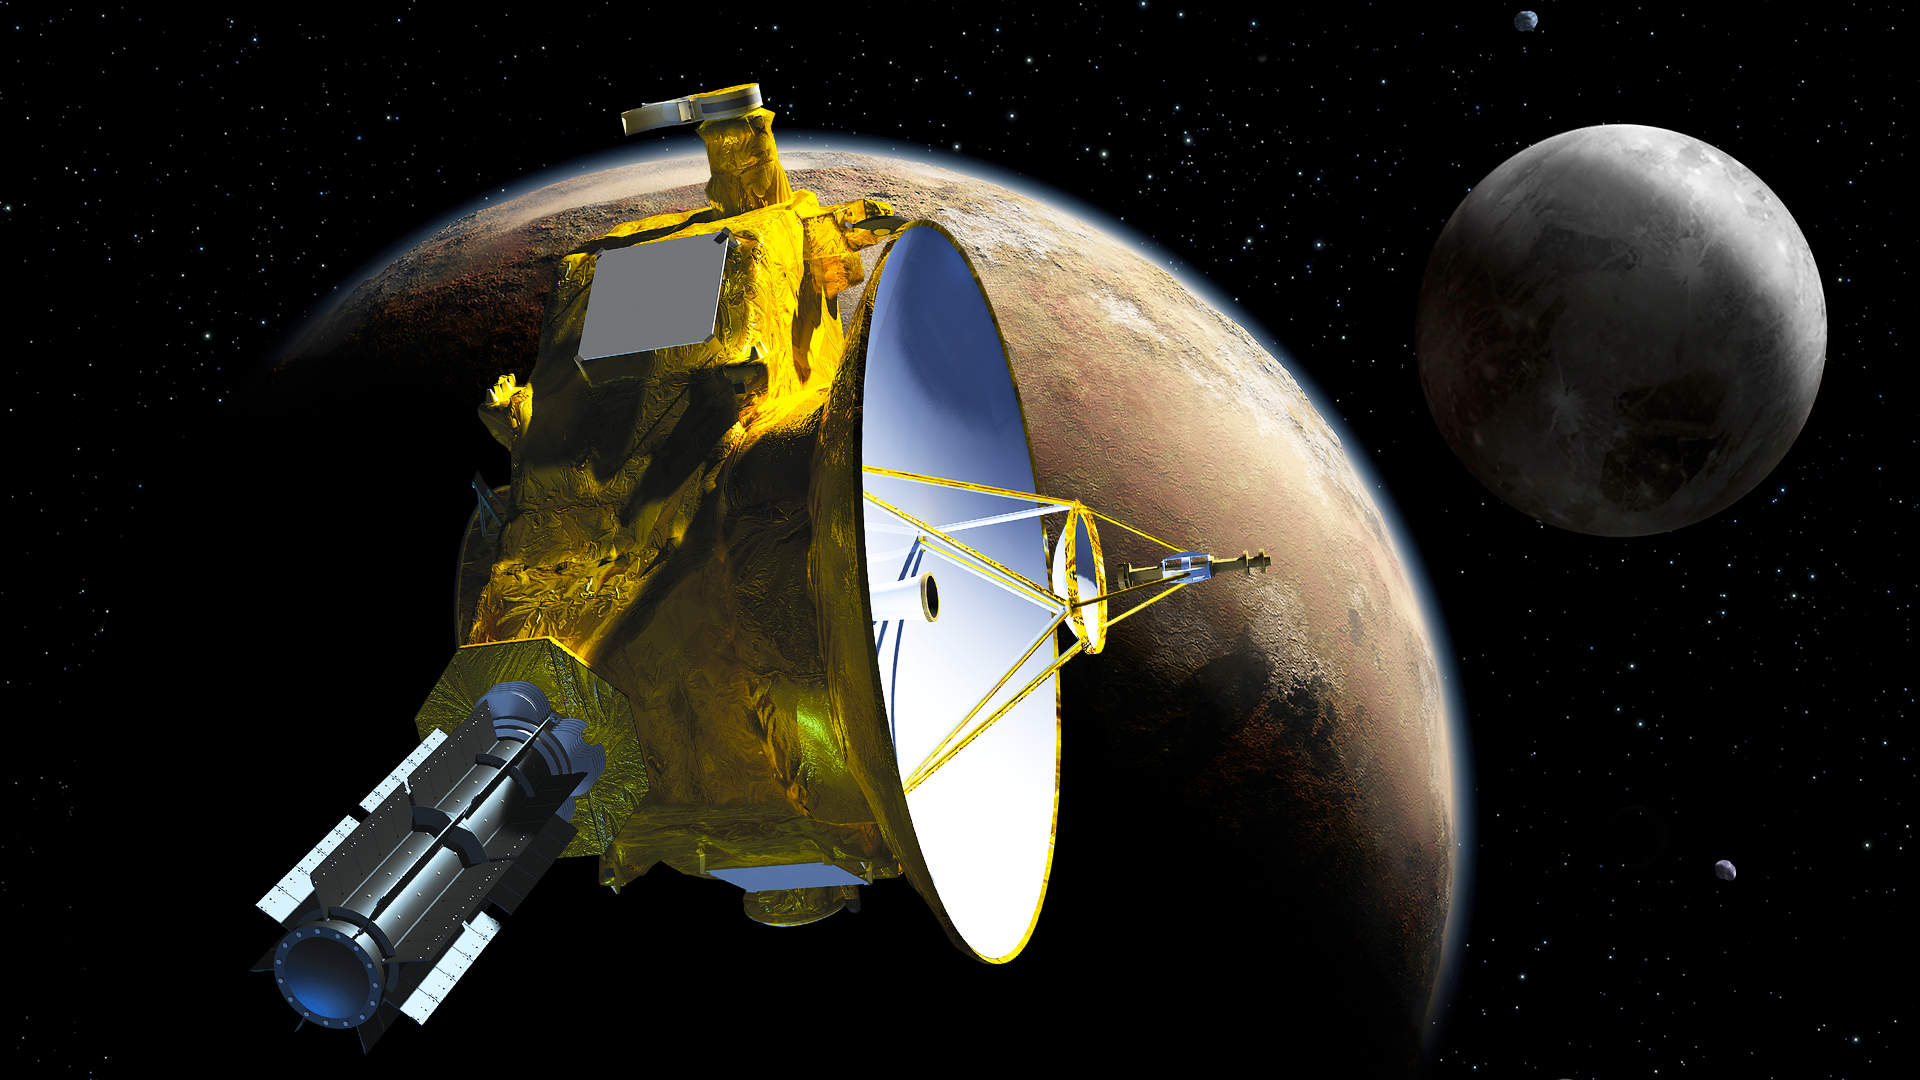 NASA's New Horizons spacecraft